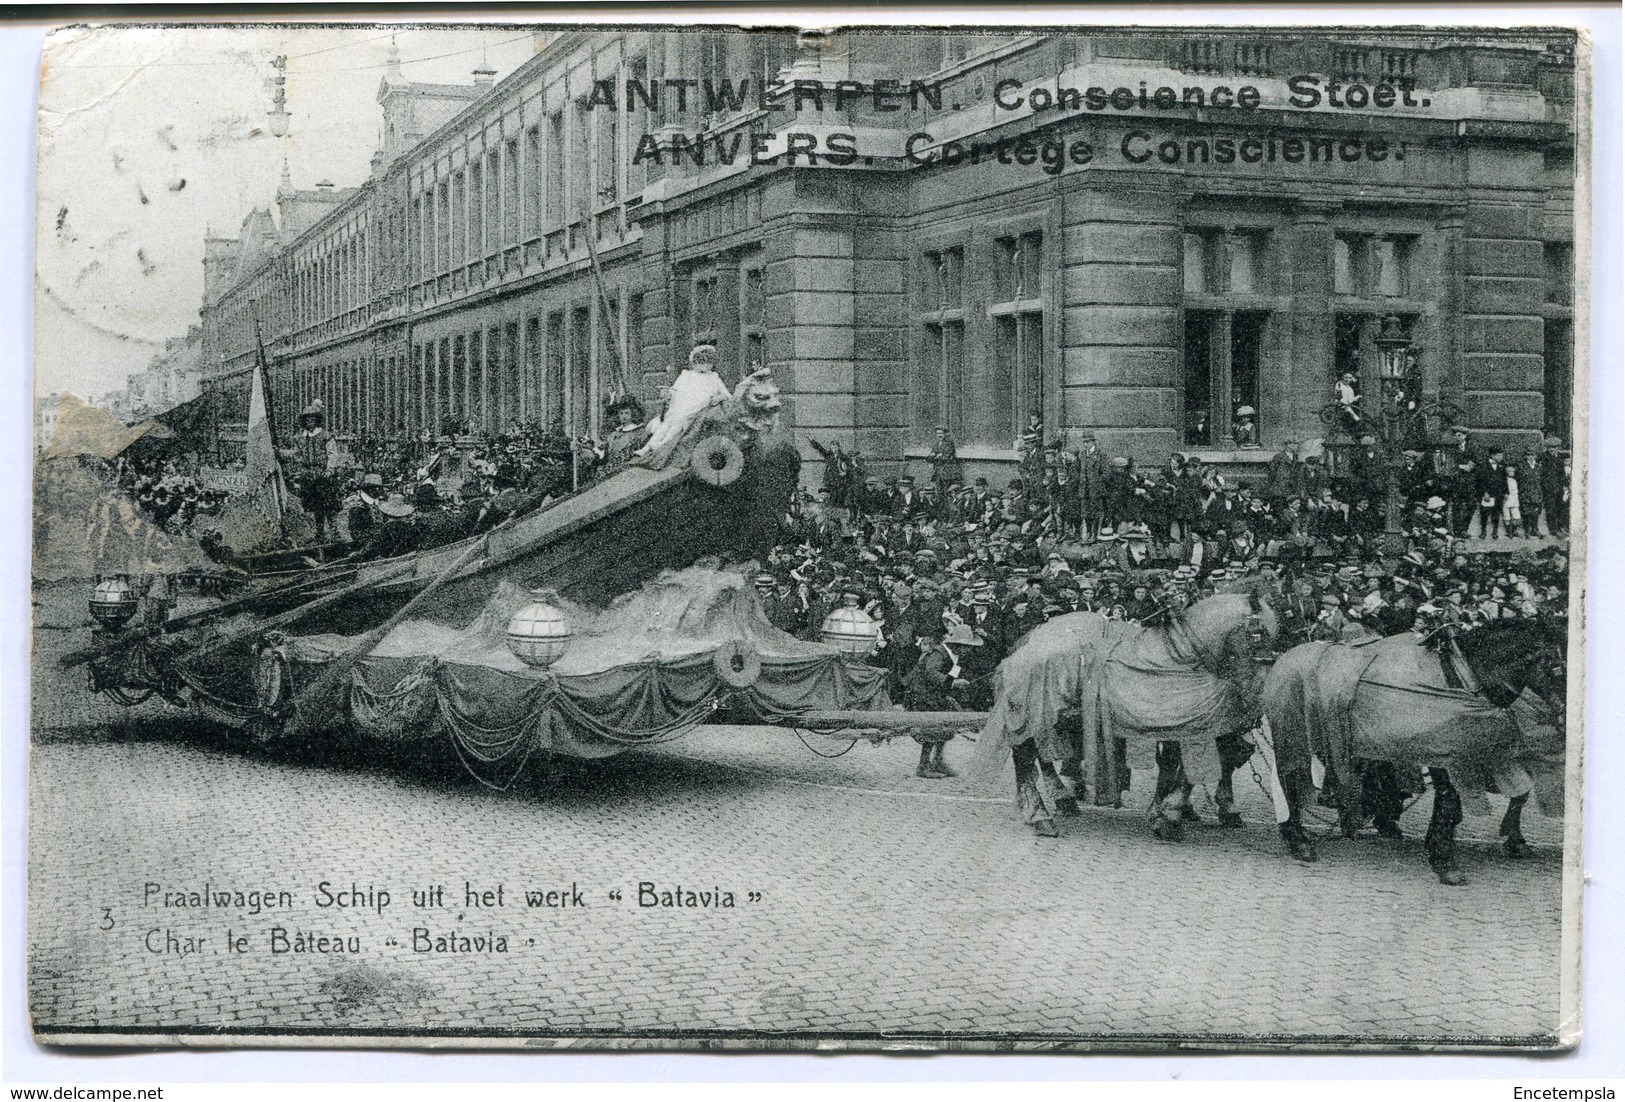 CPA - Carte Postale - Belgique - Anvers -  Cortège Conscience - Char Le Bateau "Batavia" - 1912 (CP2115) - Antwerpen